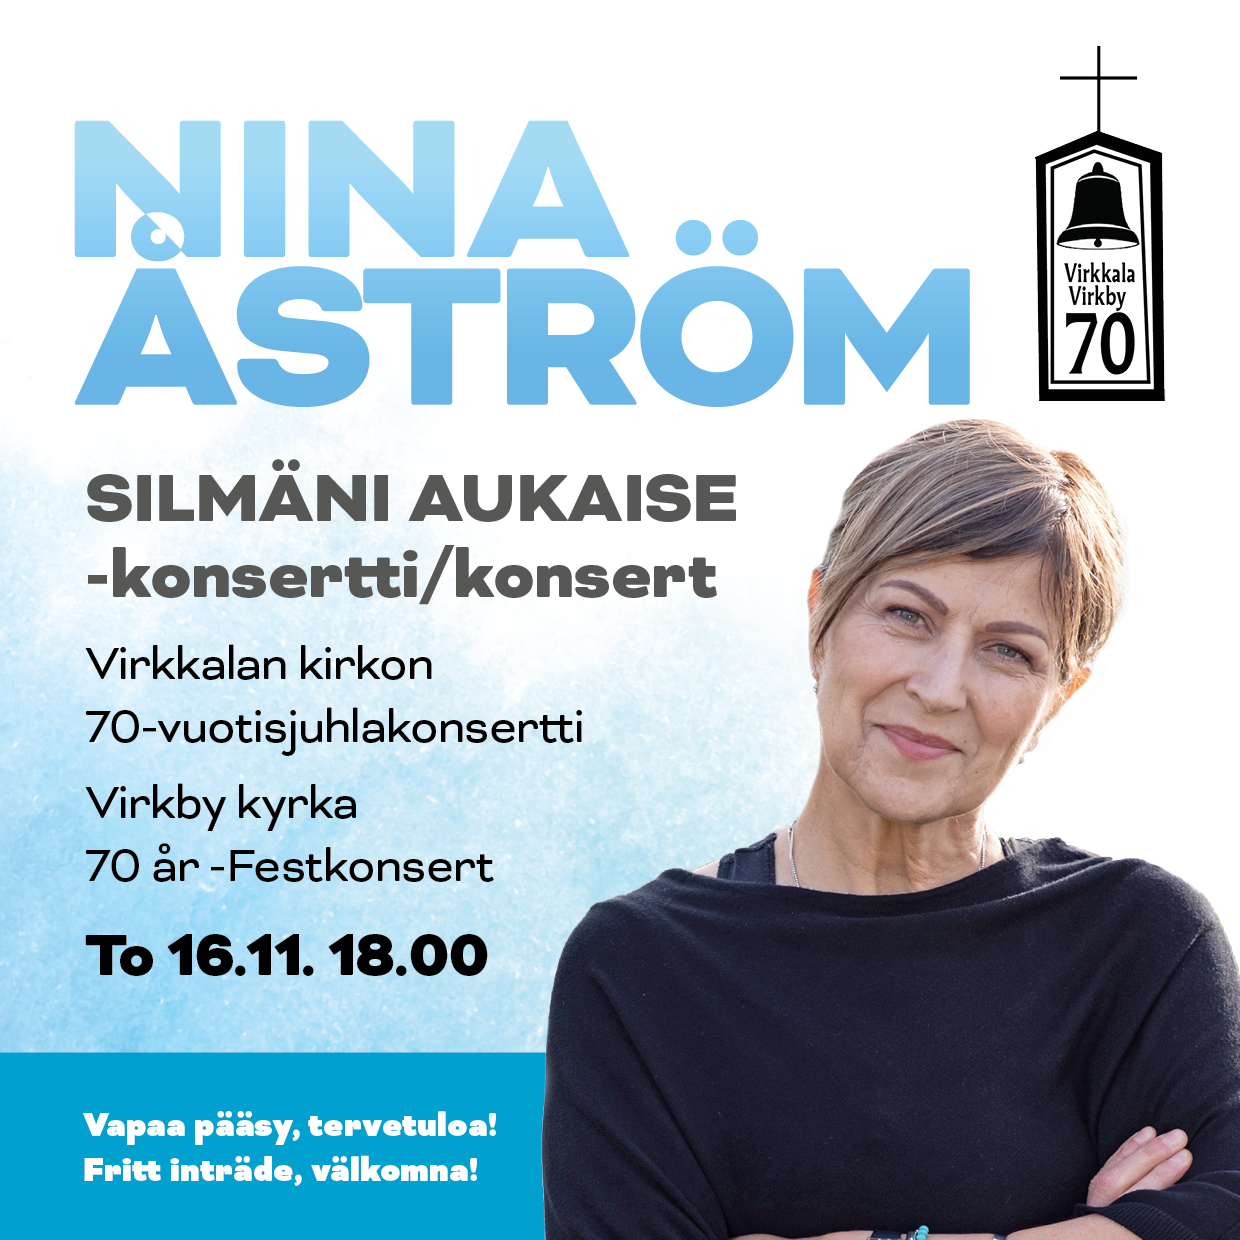 Nina Åström kuvassa ja konsertin aika ja paikka